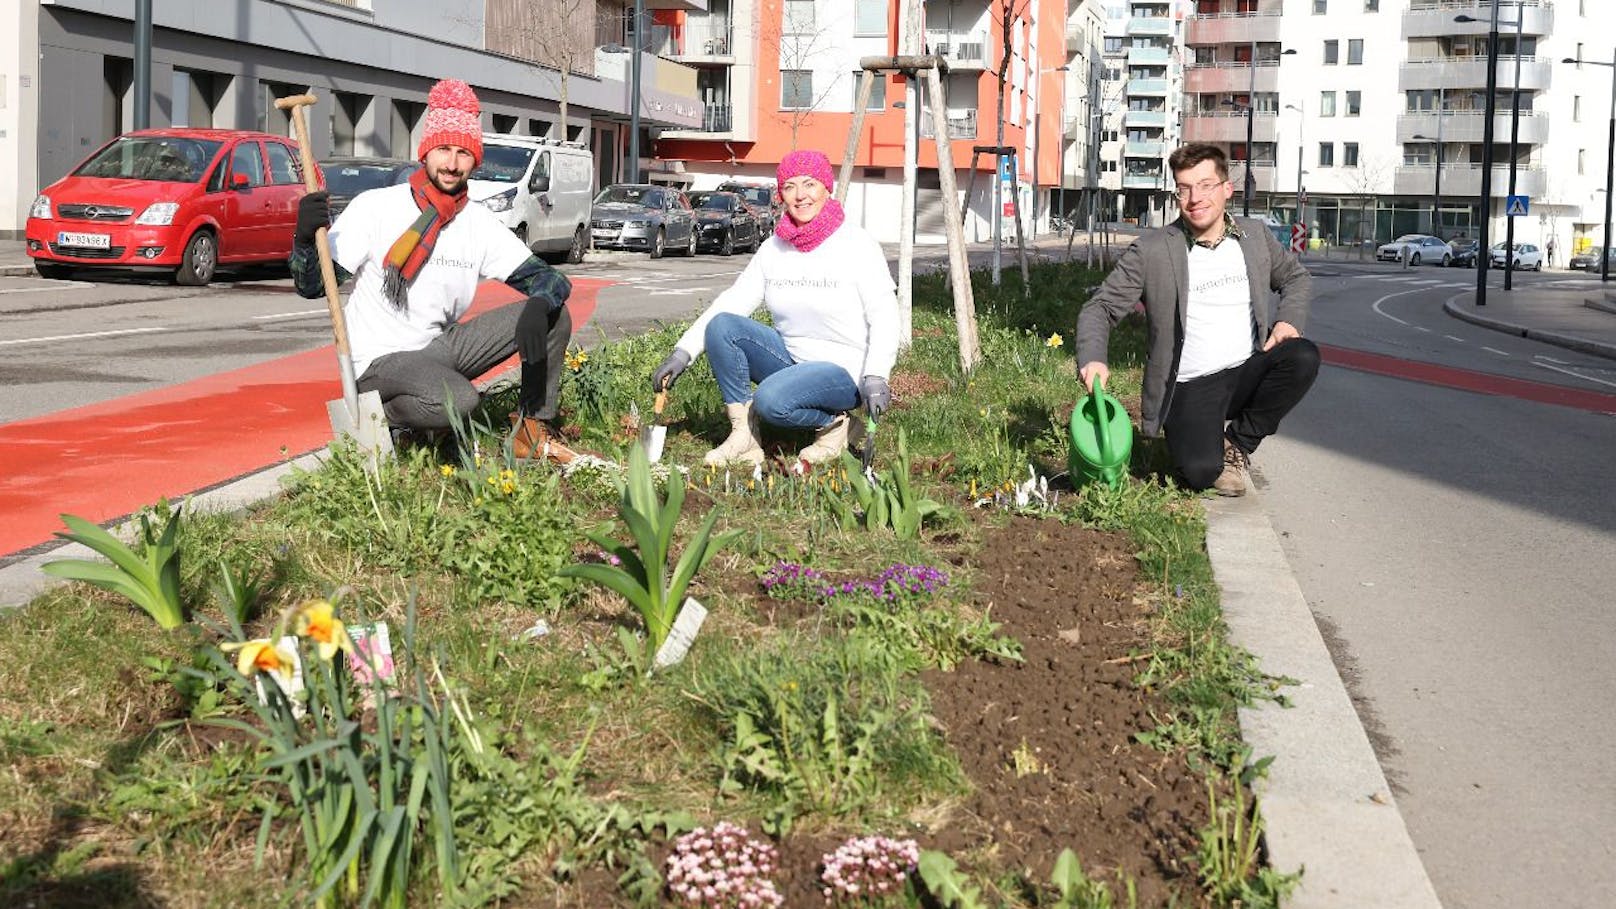 Thomas, Markiefka, Marta Frak und Marciej Marszalek: Als Wagner Brüder kümmern sie sich um verwilderte Verkehrsinseln und pflanzen hunderte Blumen.